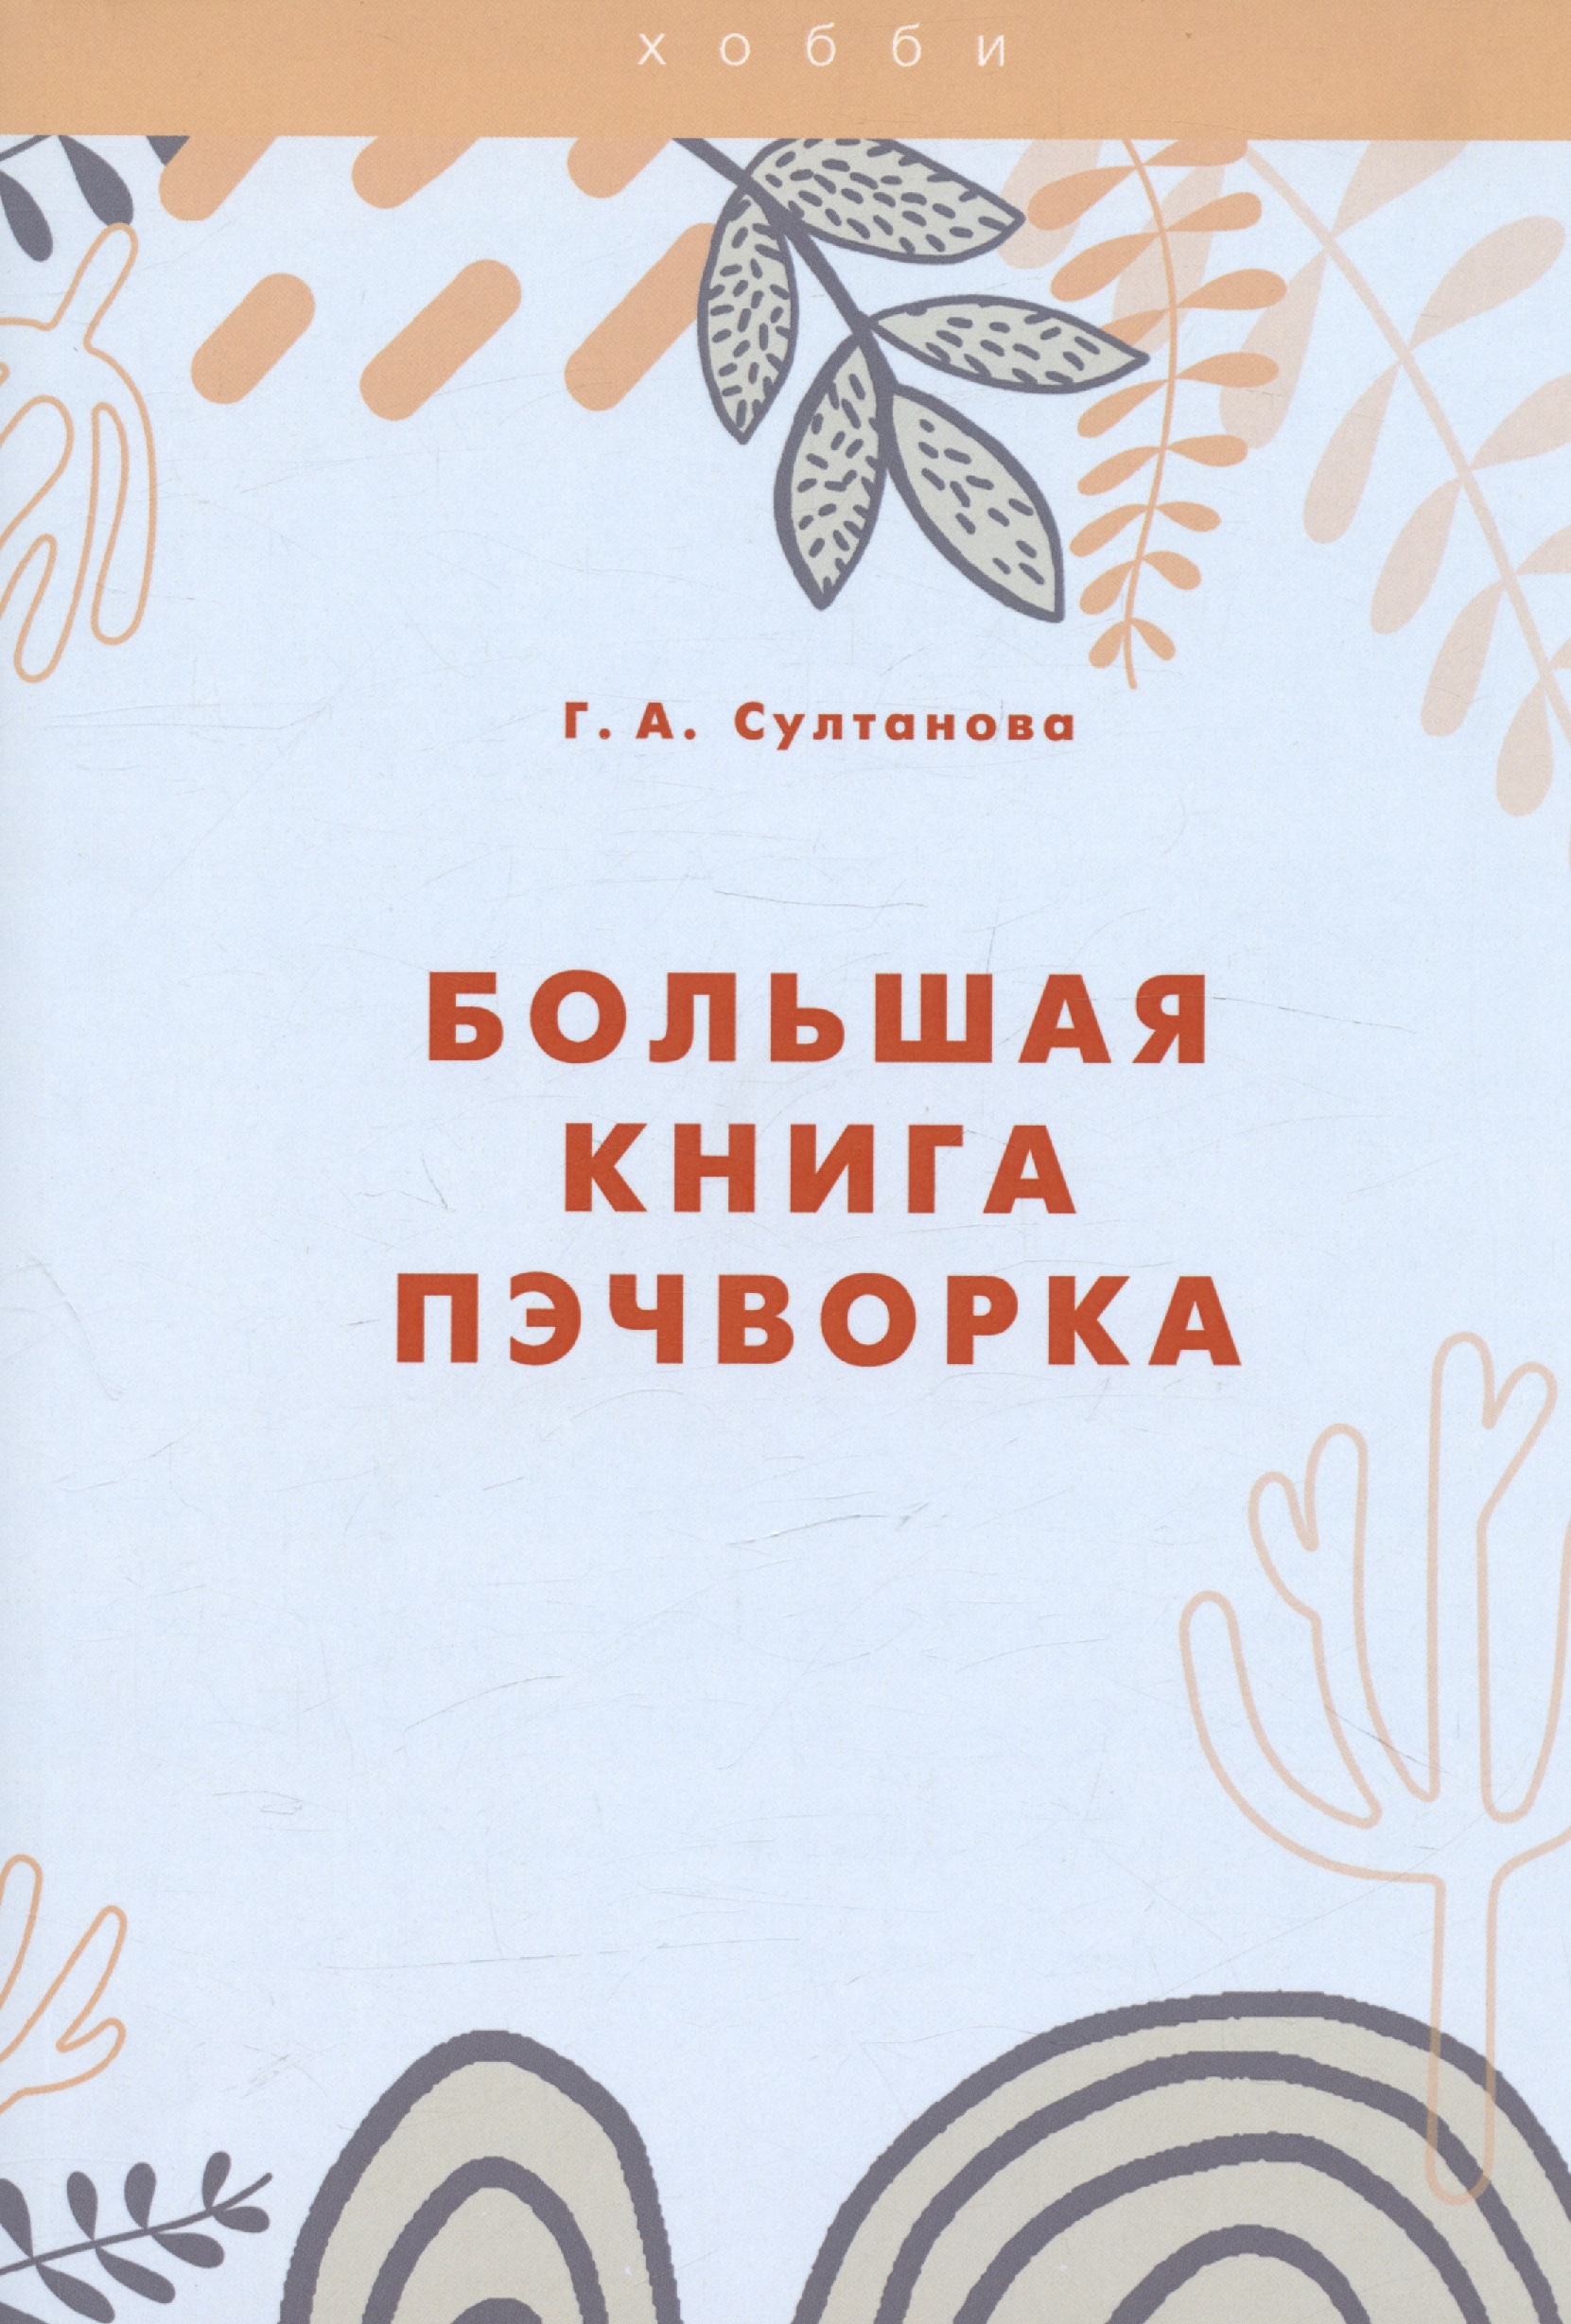 Султанова Г. А. Большая книга пэчворка